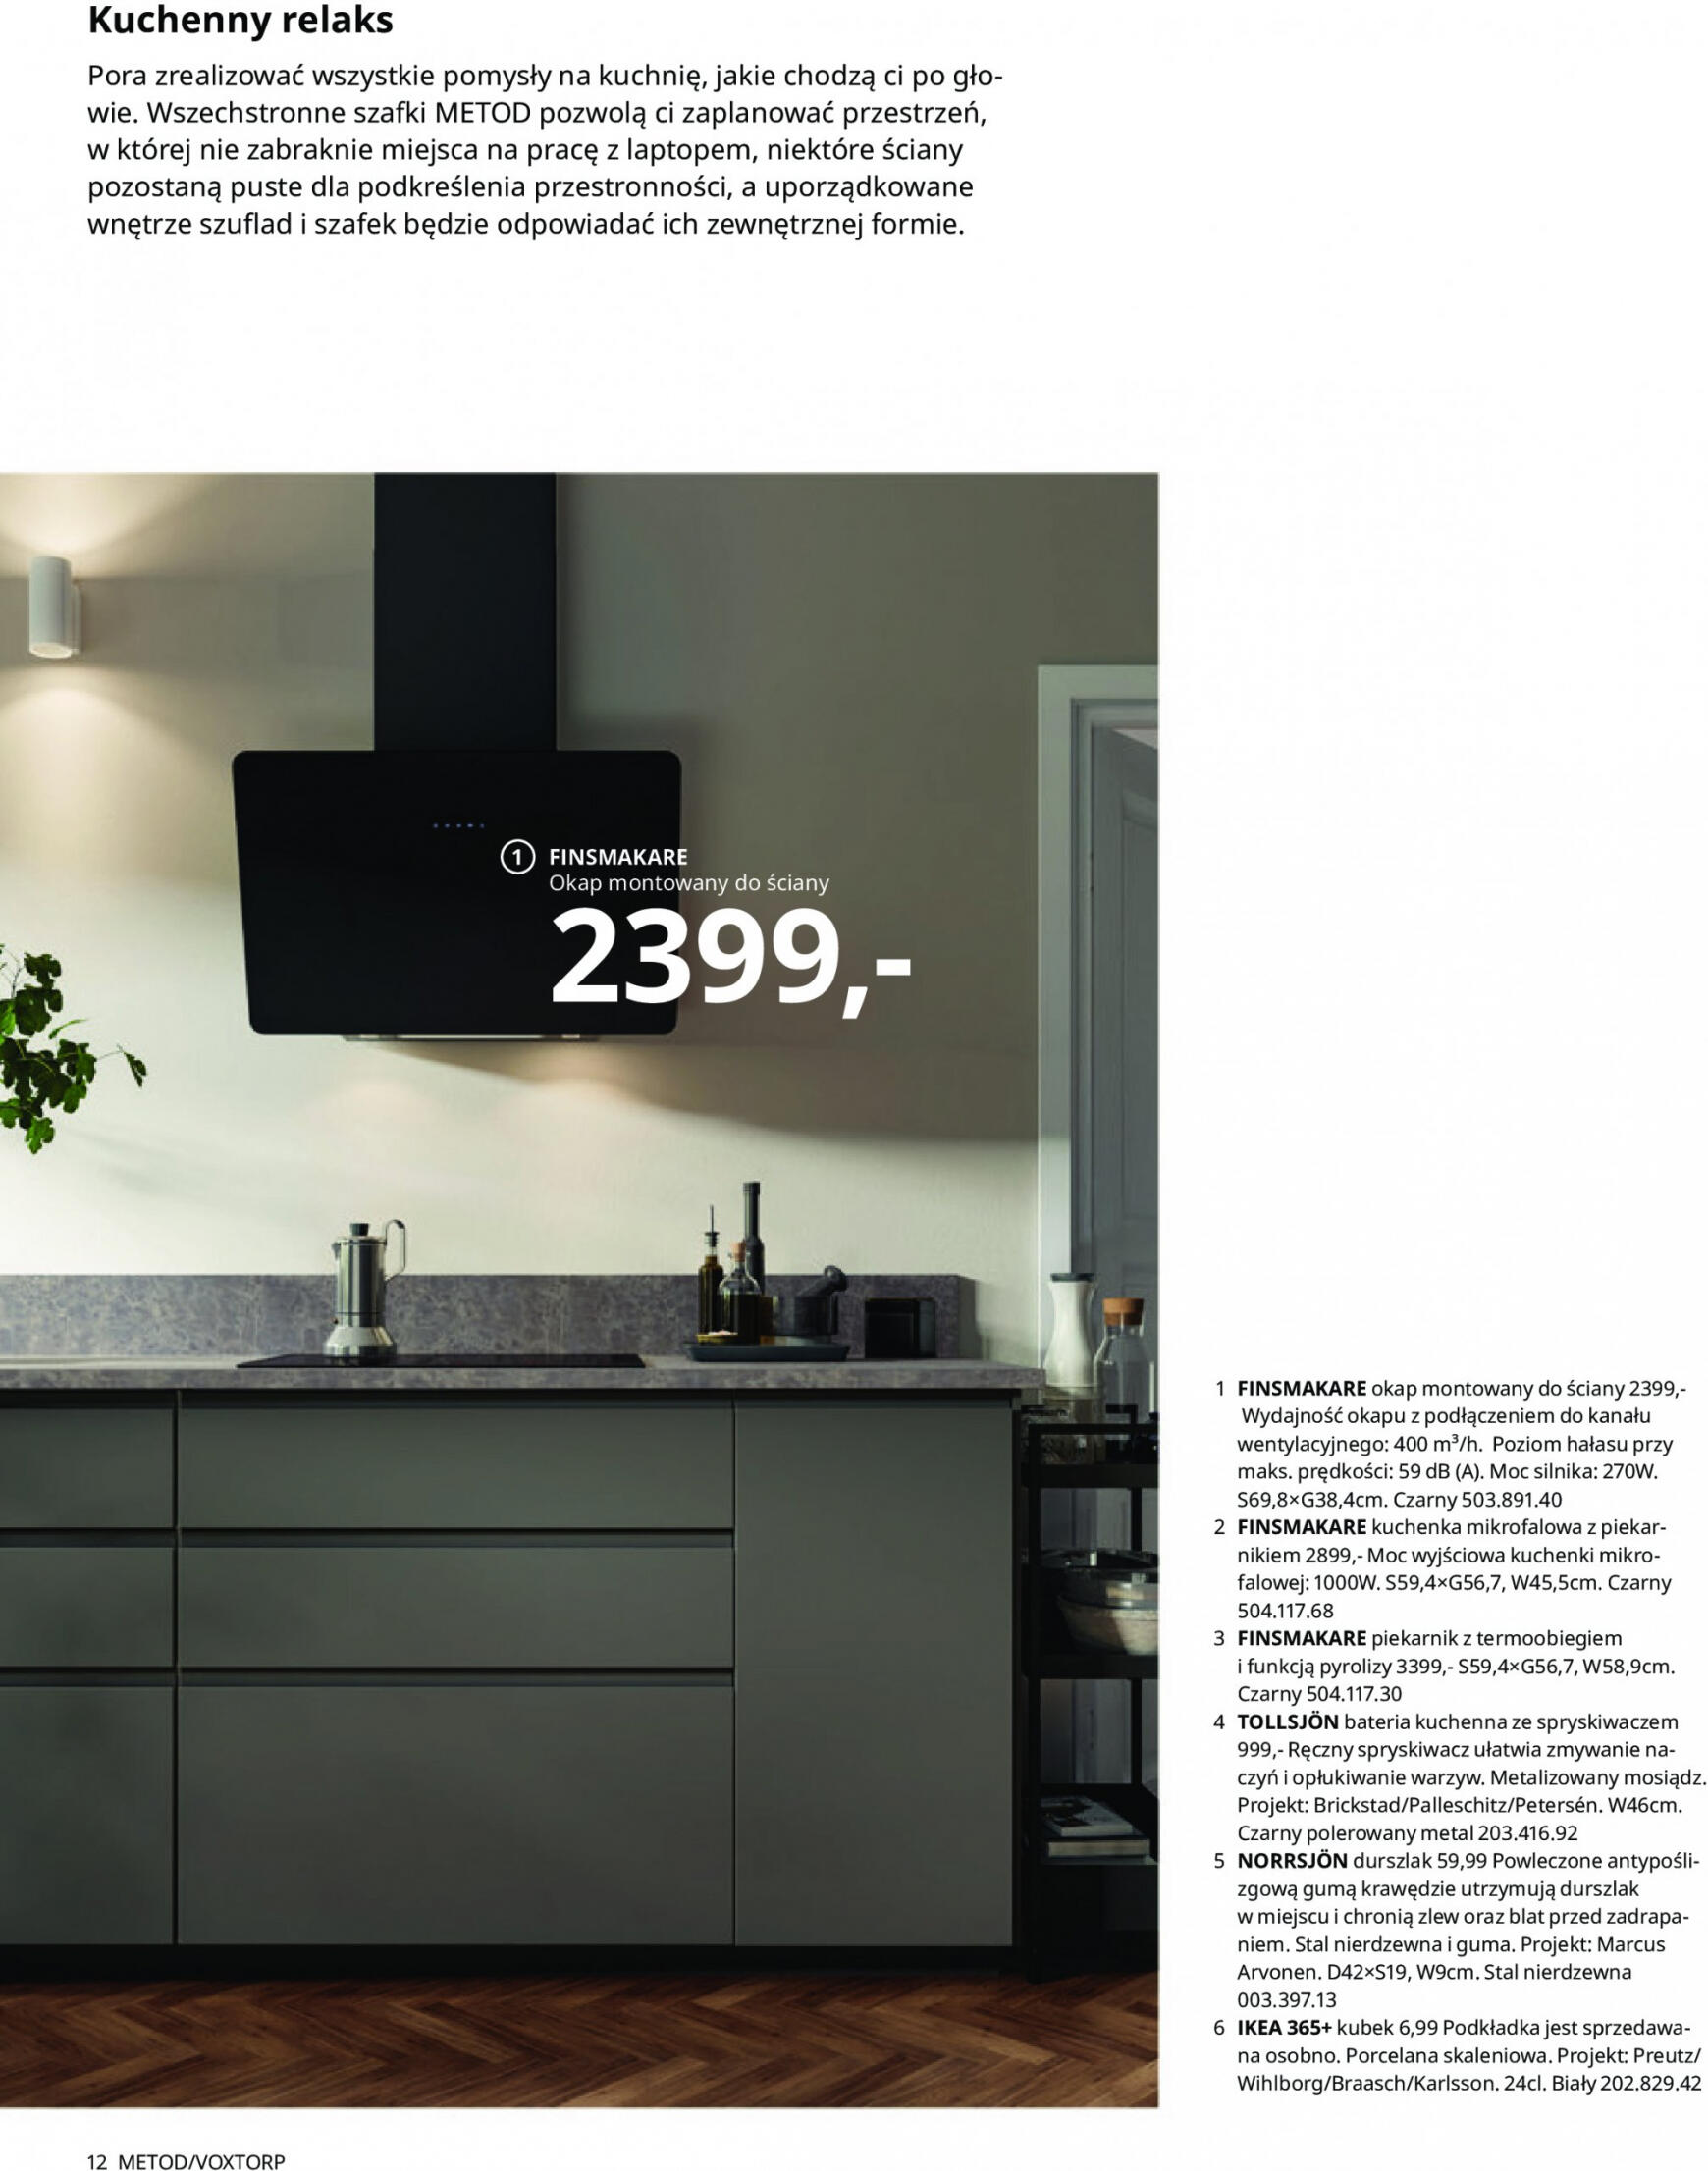 ikea - IKEA - Kuchnie - page: 12